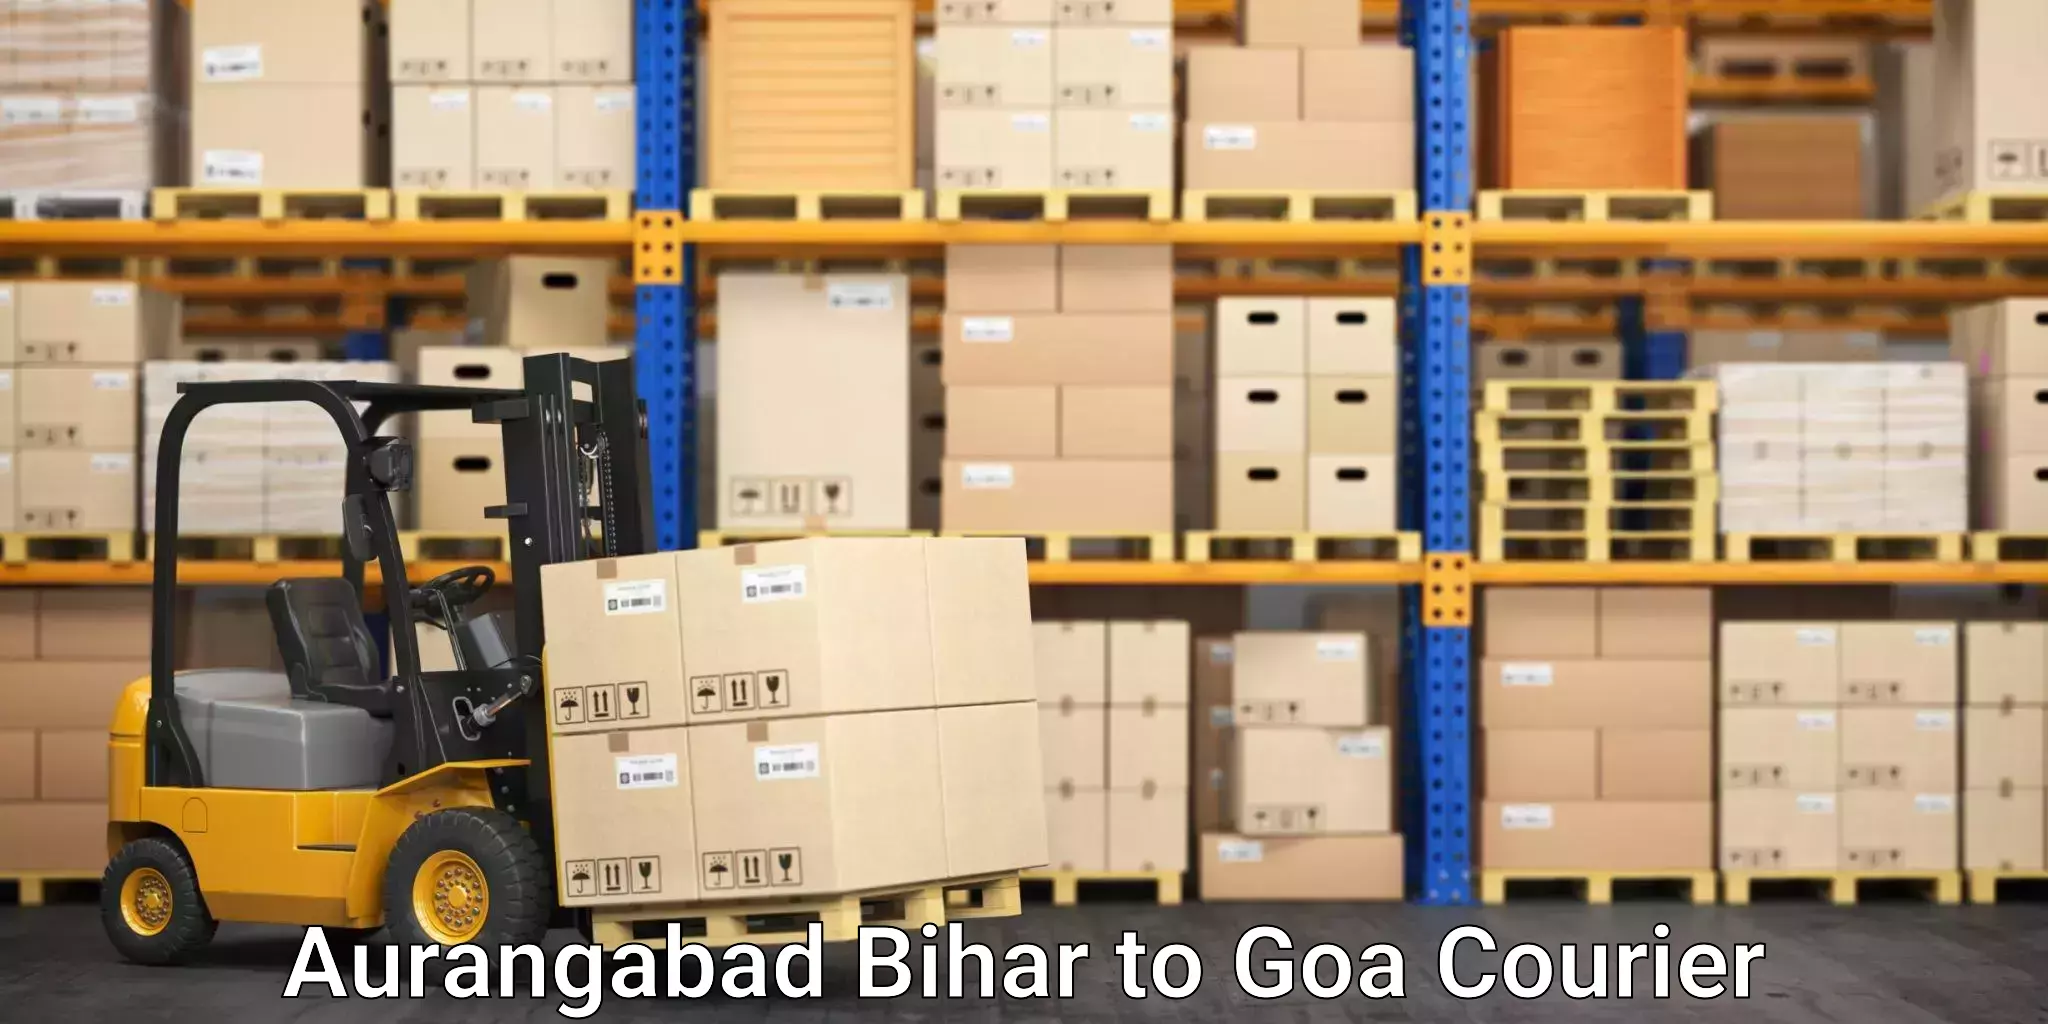 Furniture movers and packers Aurangabad Bihar to Vasco da Gama